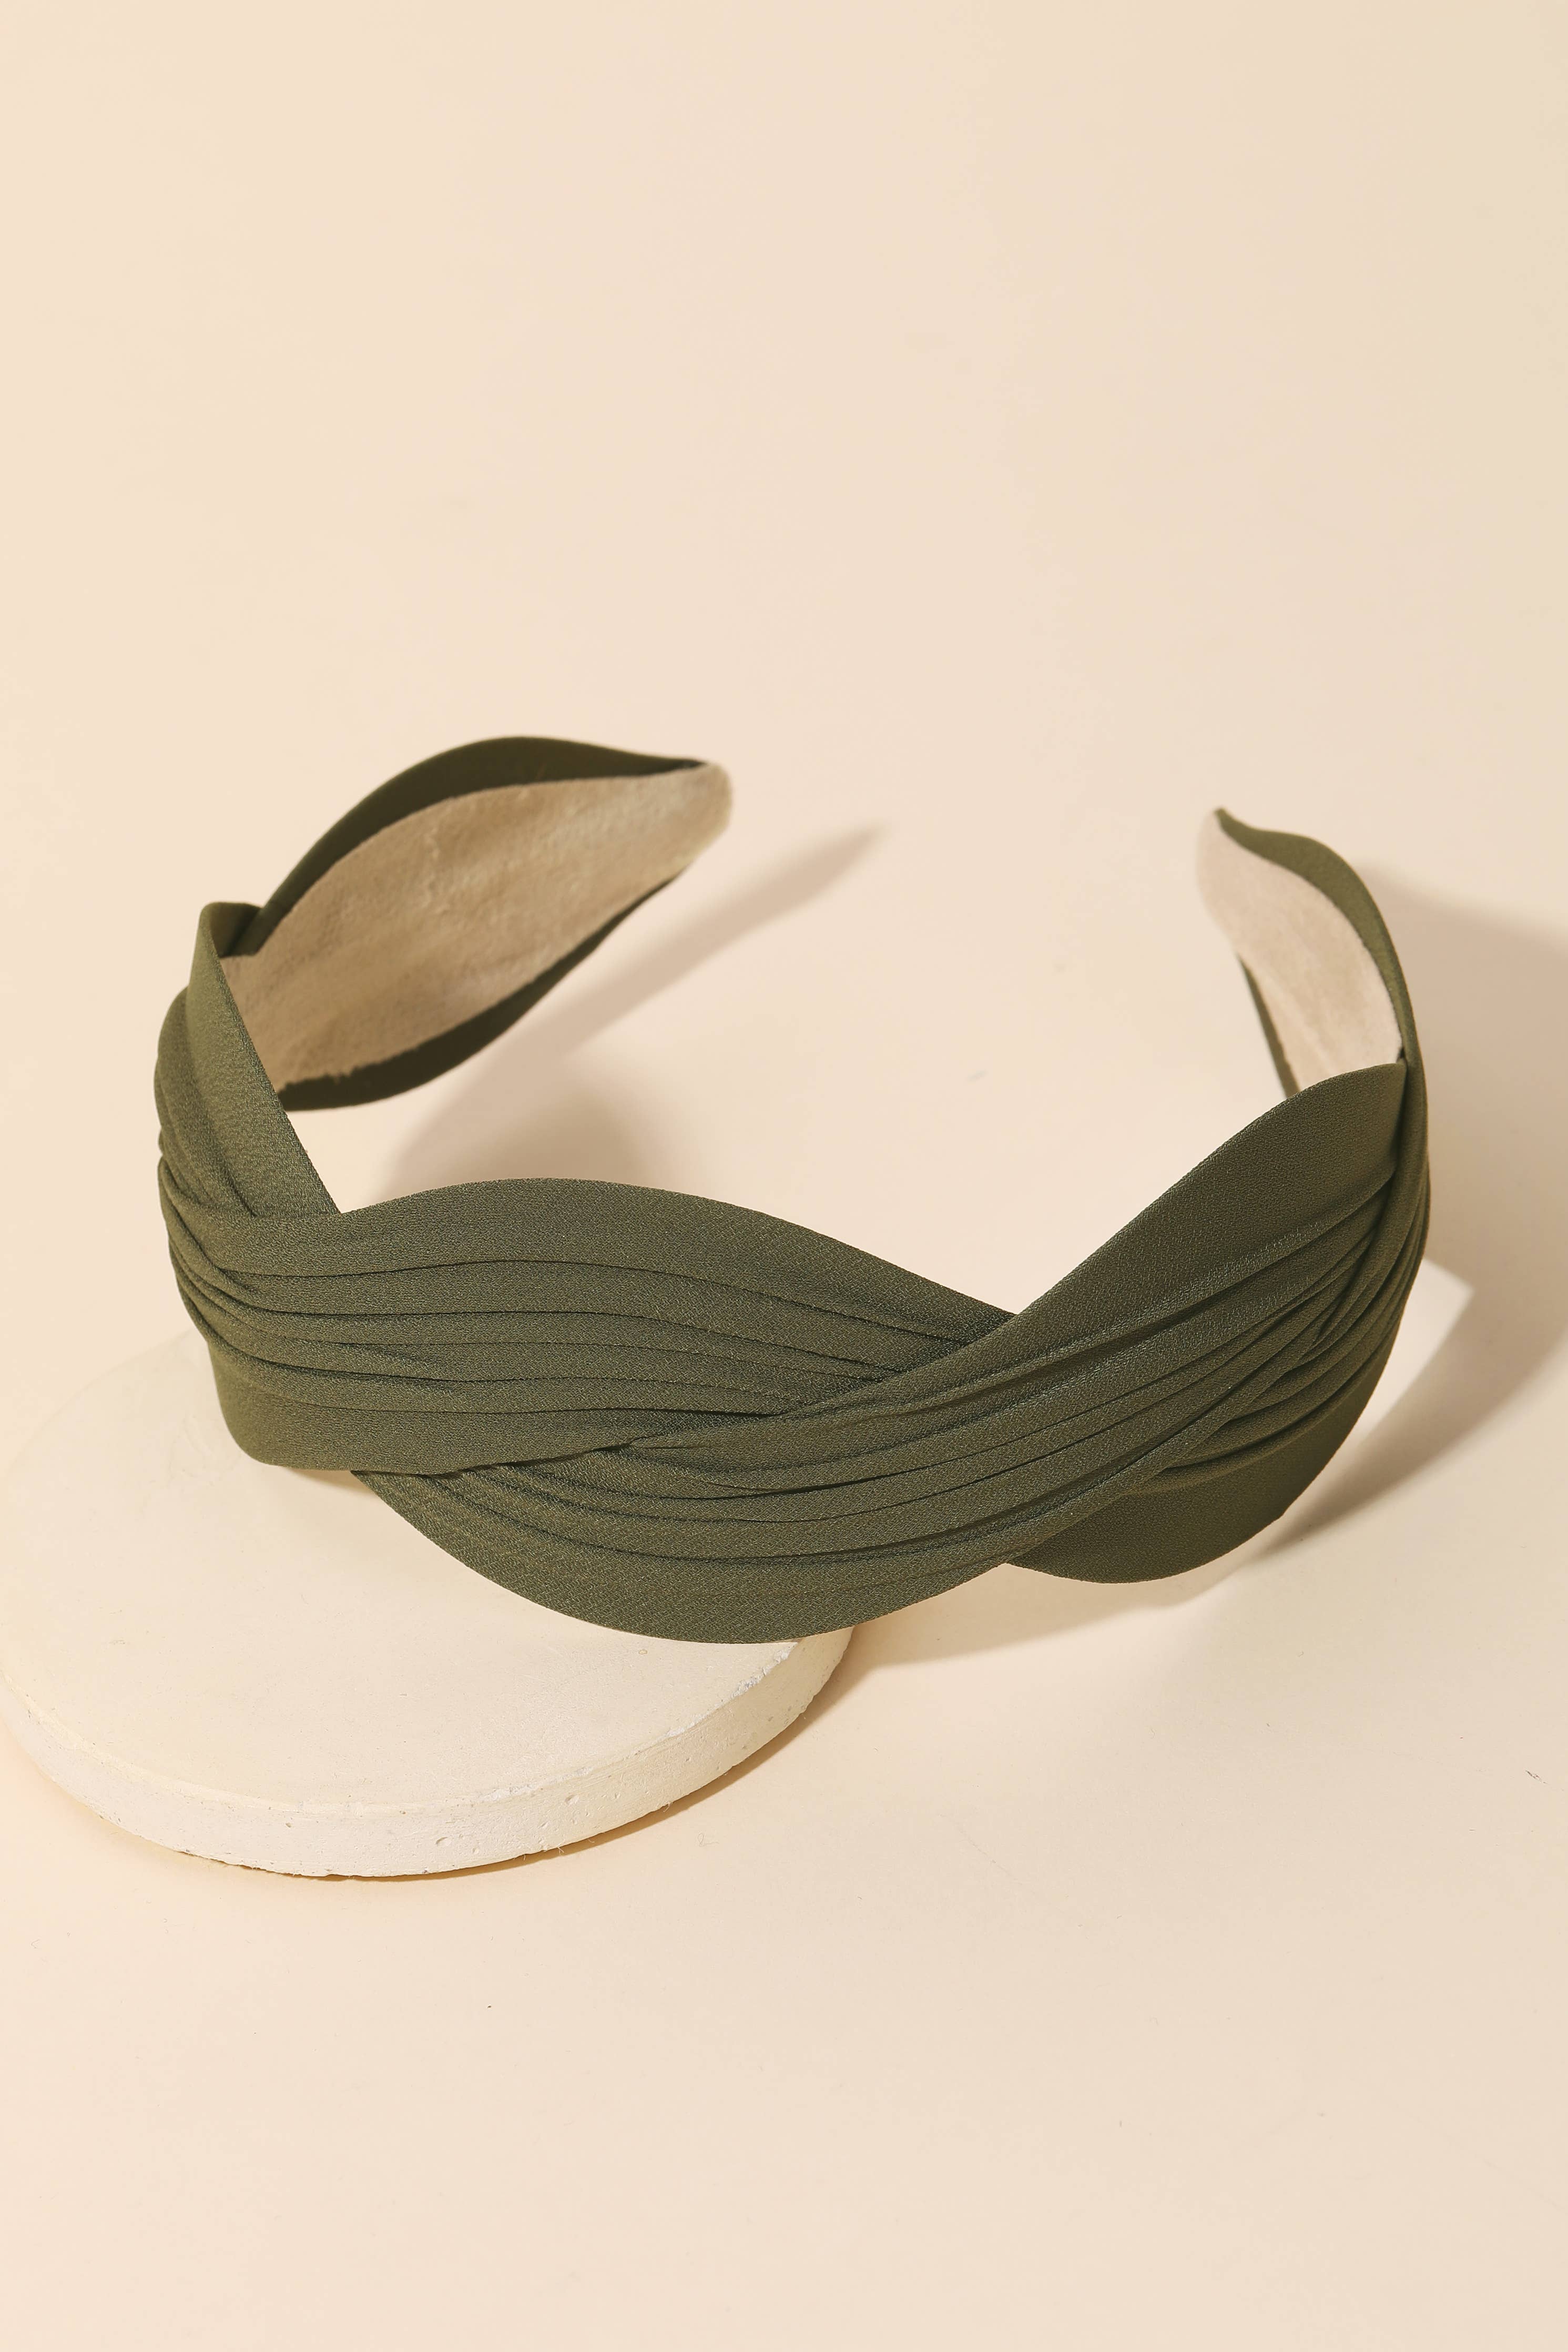 Wavy Fabric Fashion Headband